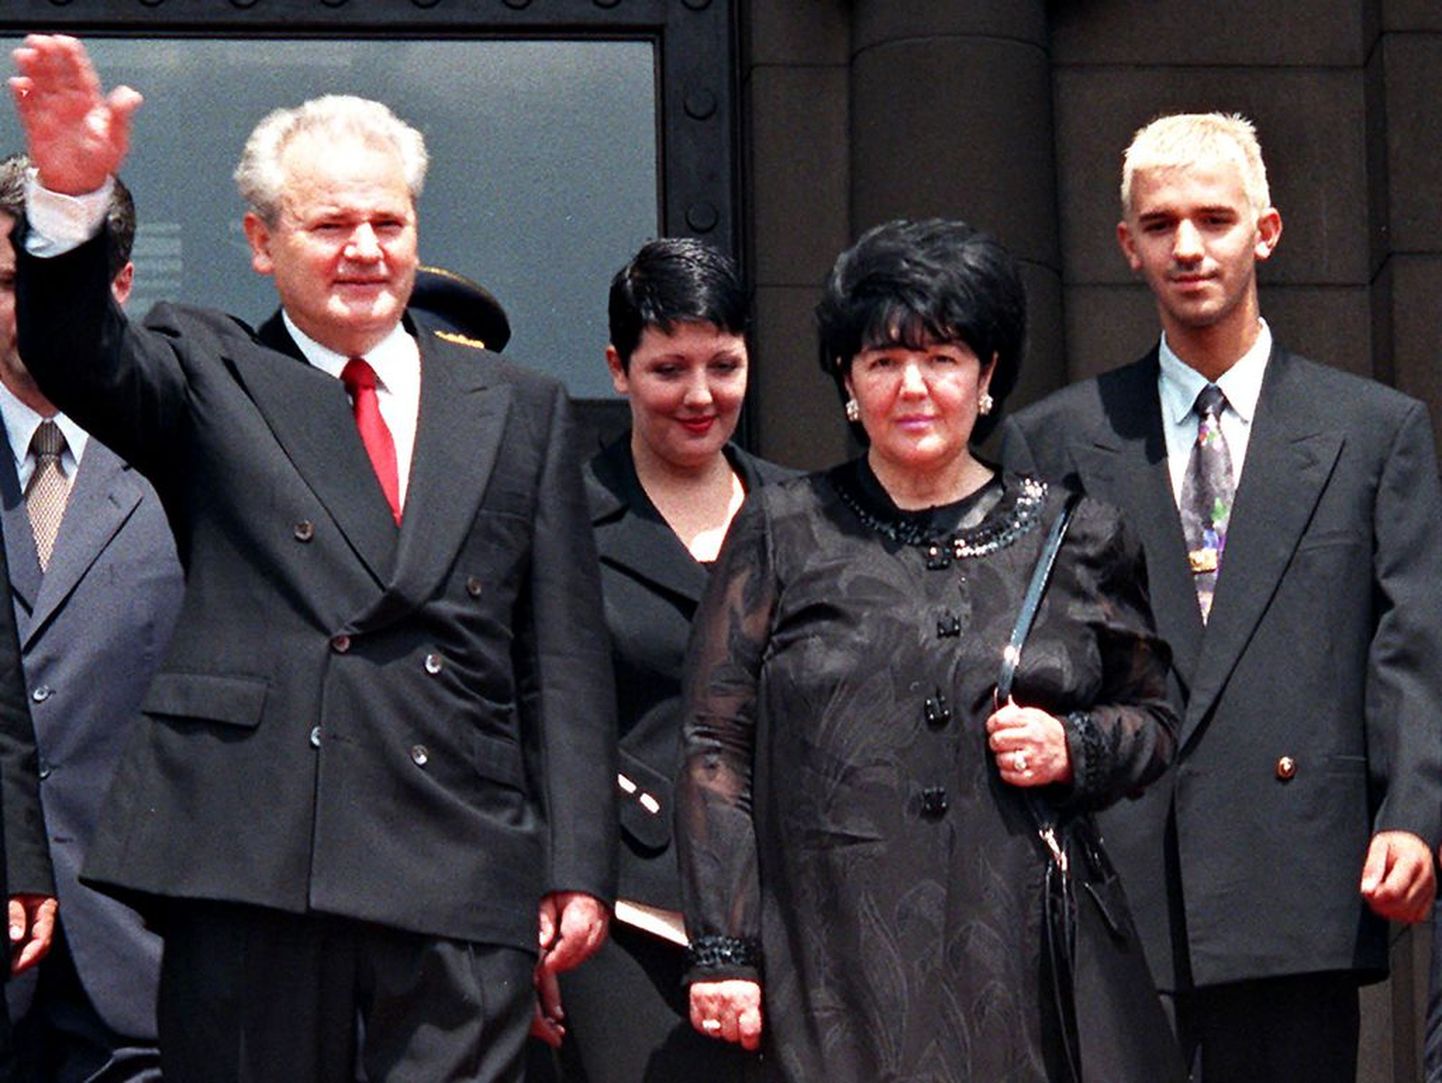 Kümme aastat tagasi tehtud pildil esiplaanil on Slobodan Milosevic (lehvitab) ja tema abikaasa Mirjana Markovvic. Taga seisavad tütar Marija ja poeg Marko.